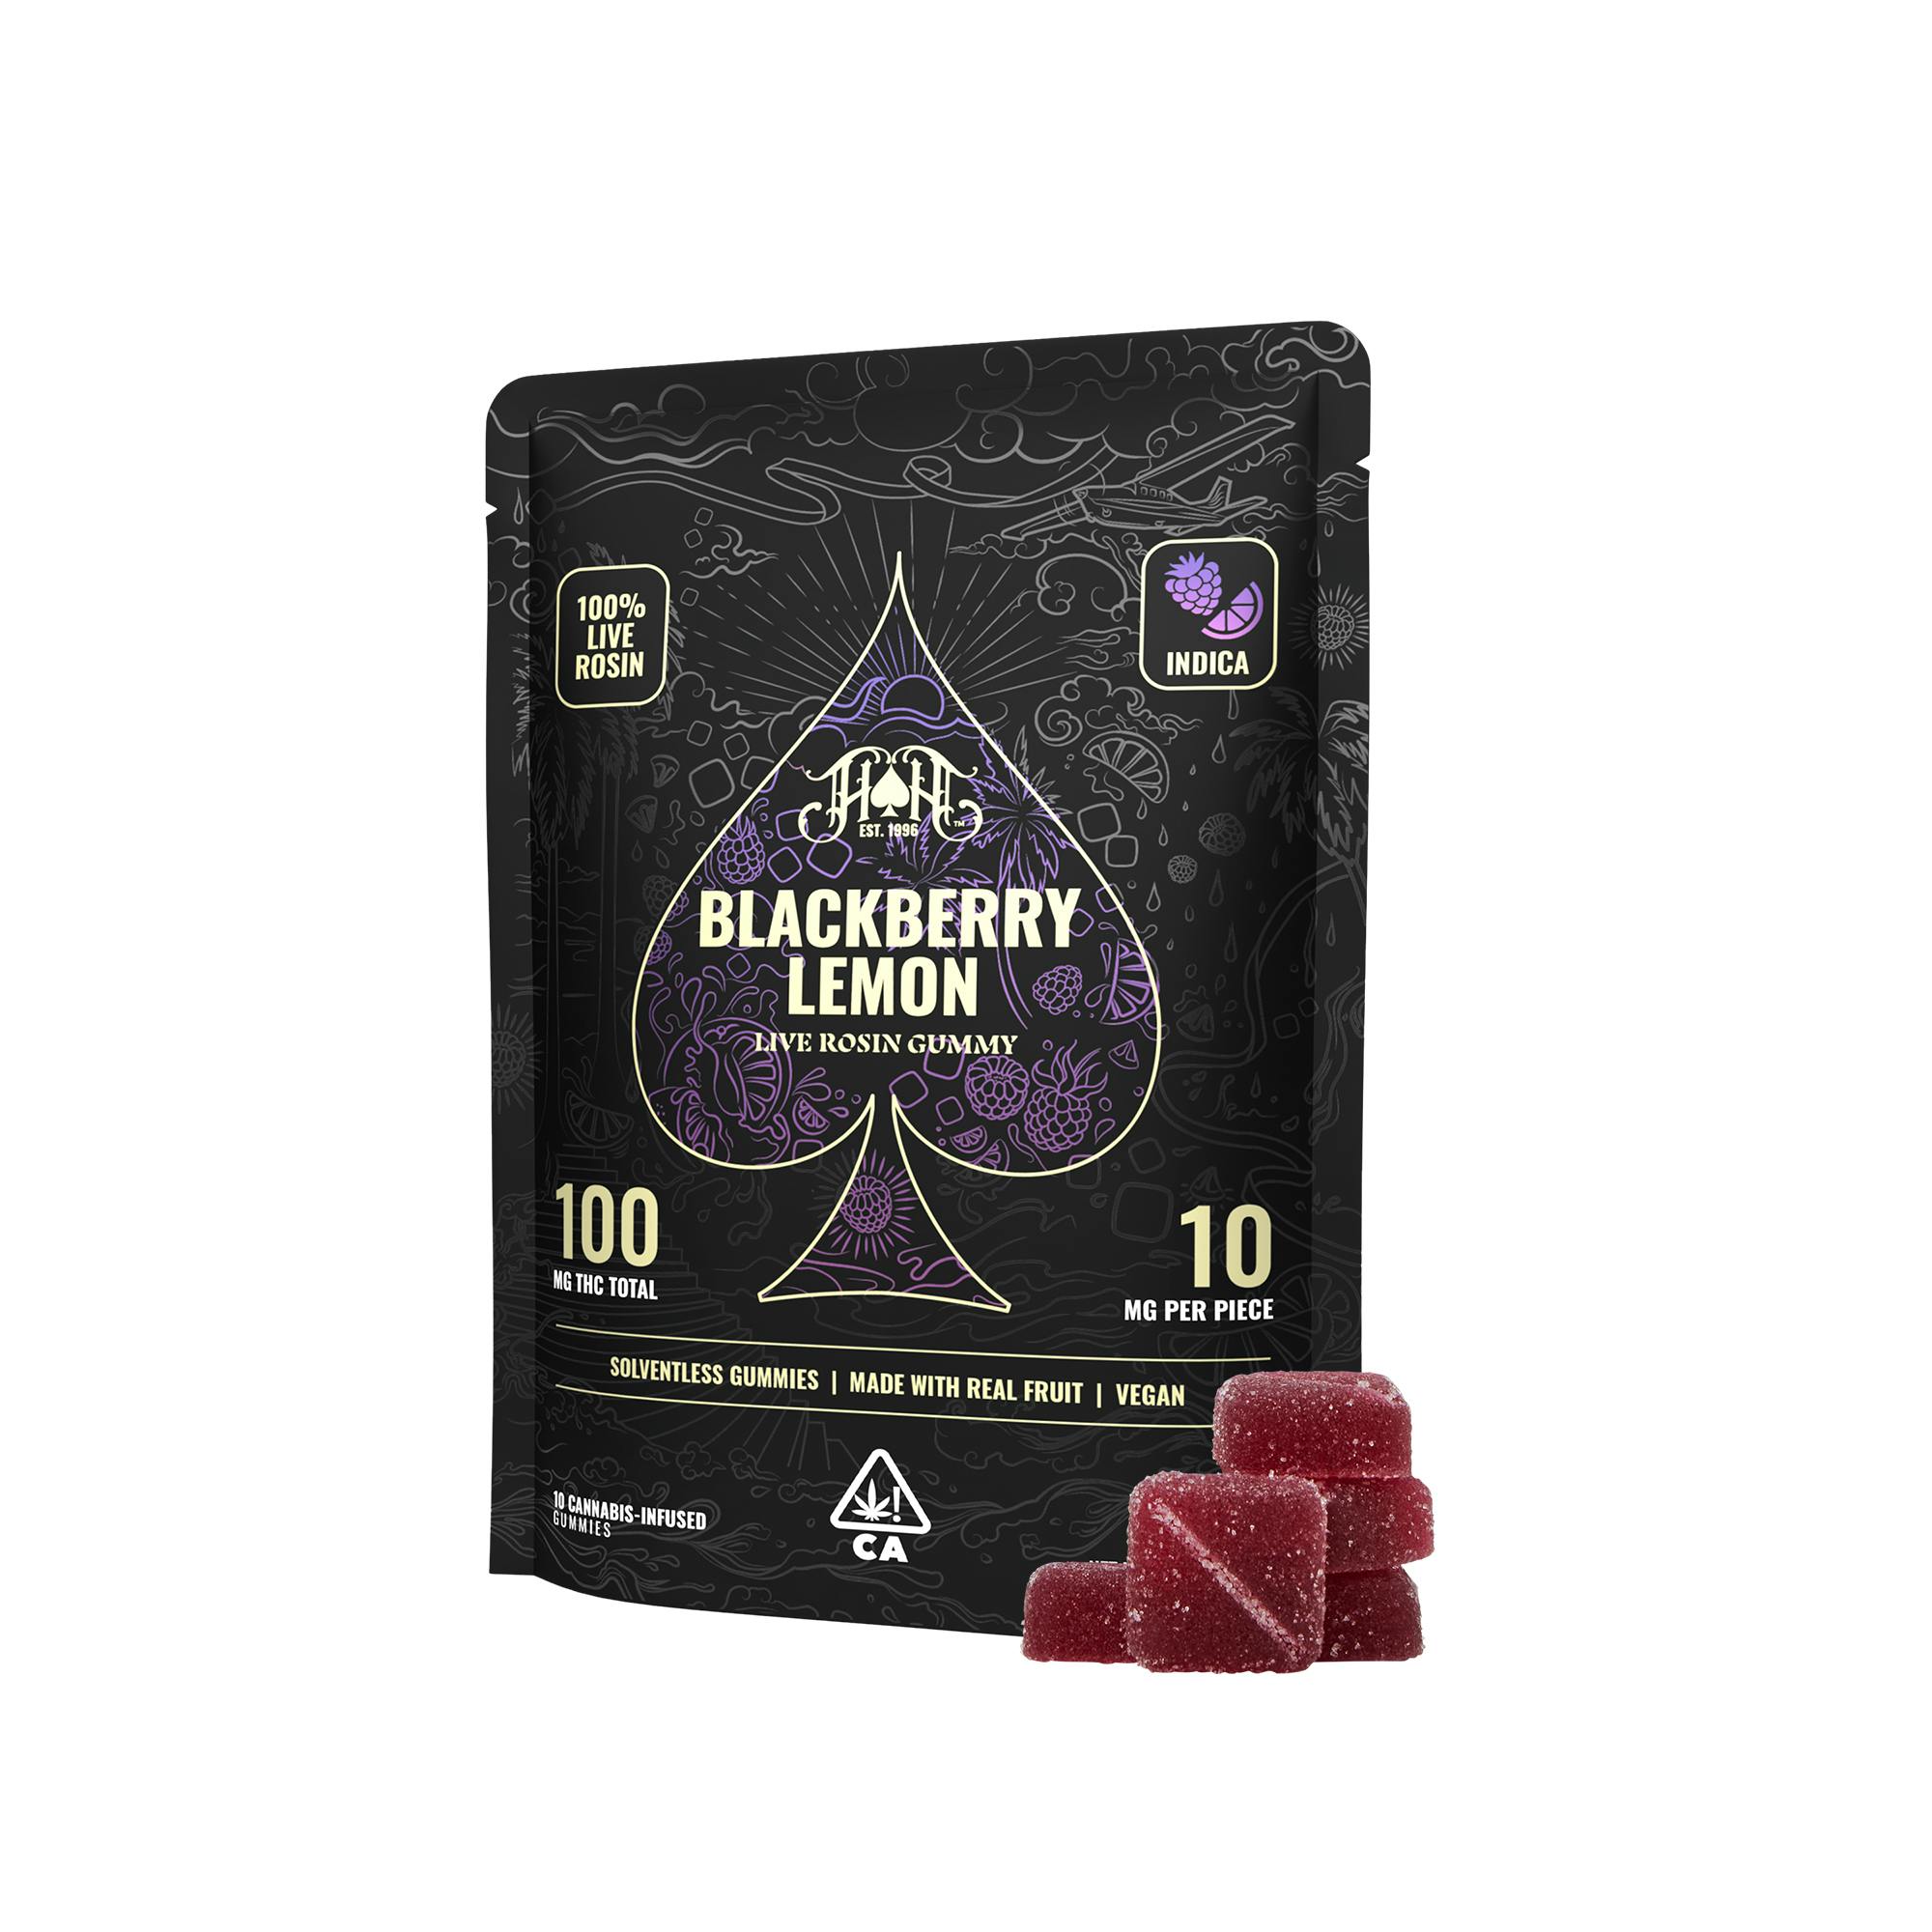 Blackberry Lemon | Indica - Live Rosin Gummies - 100mg THC